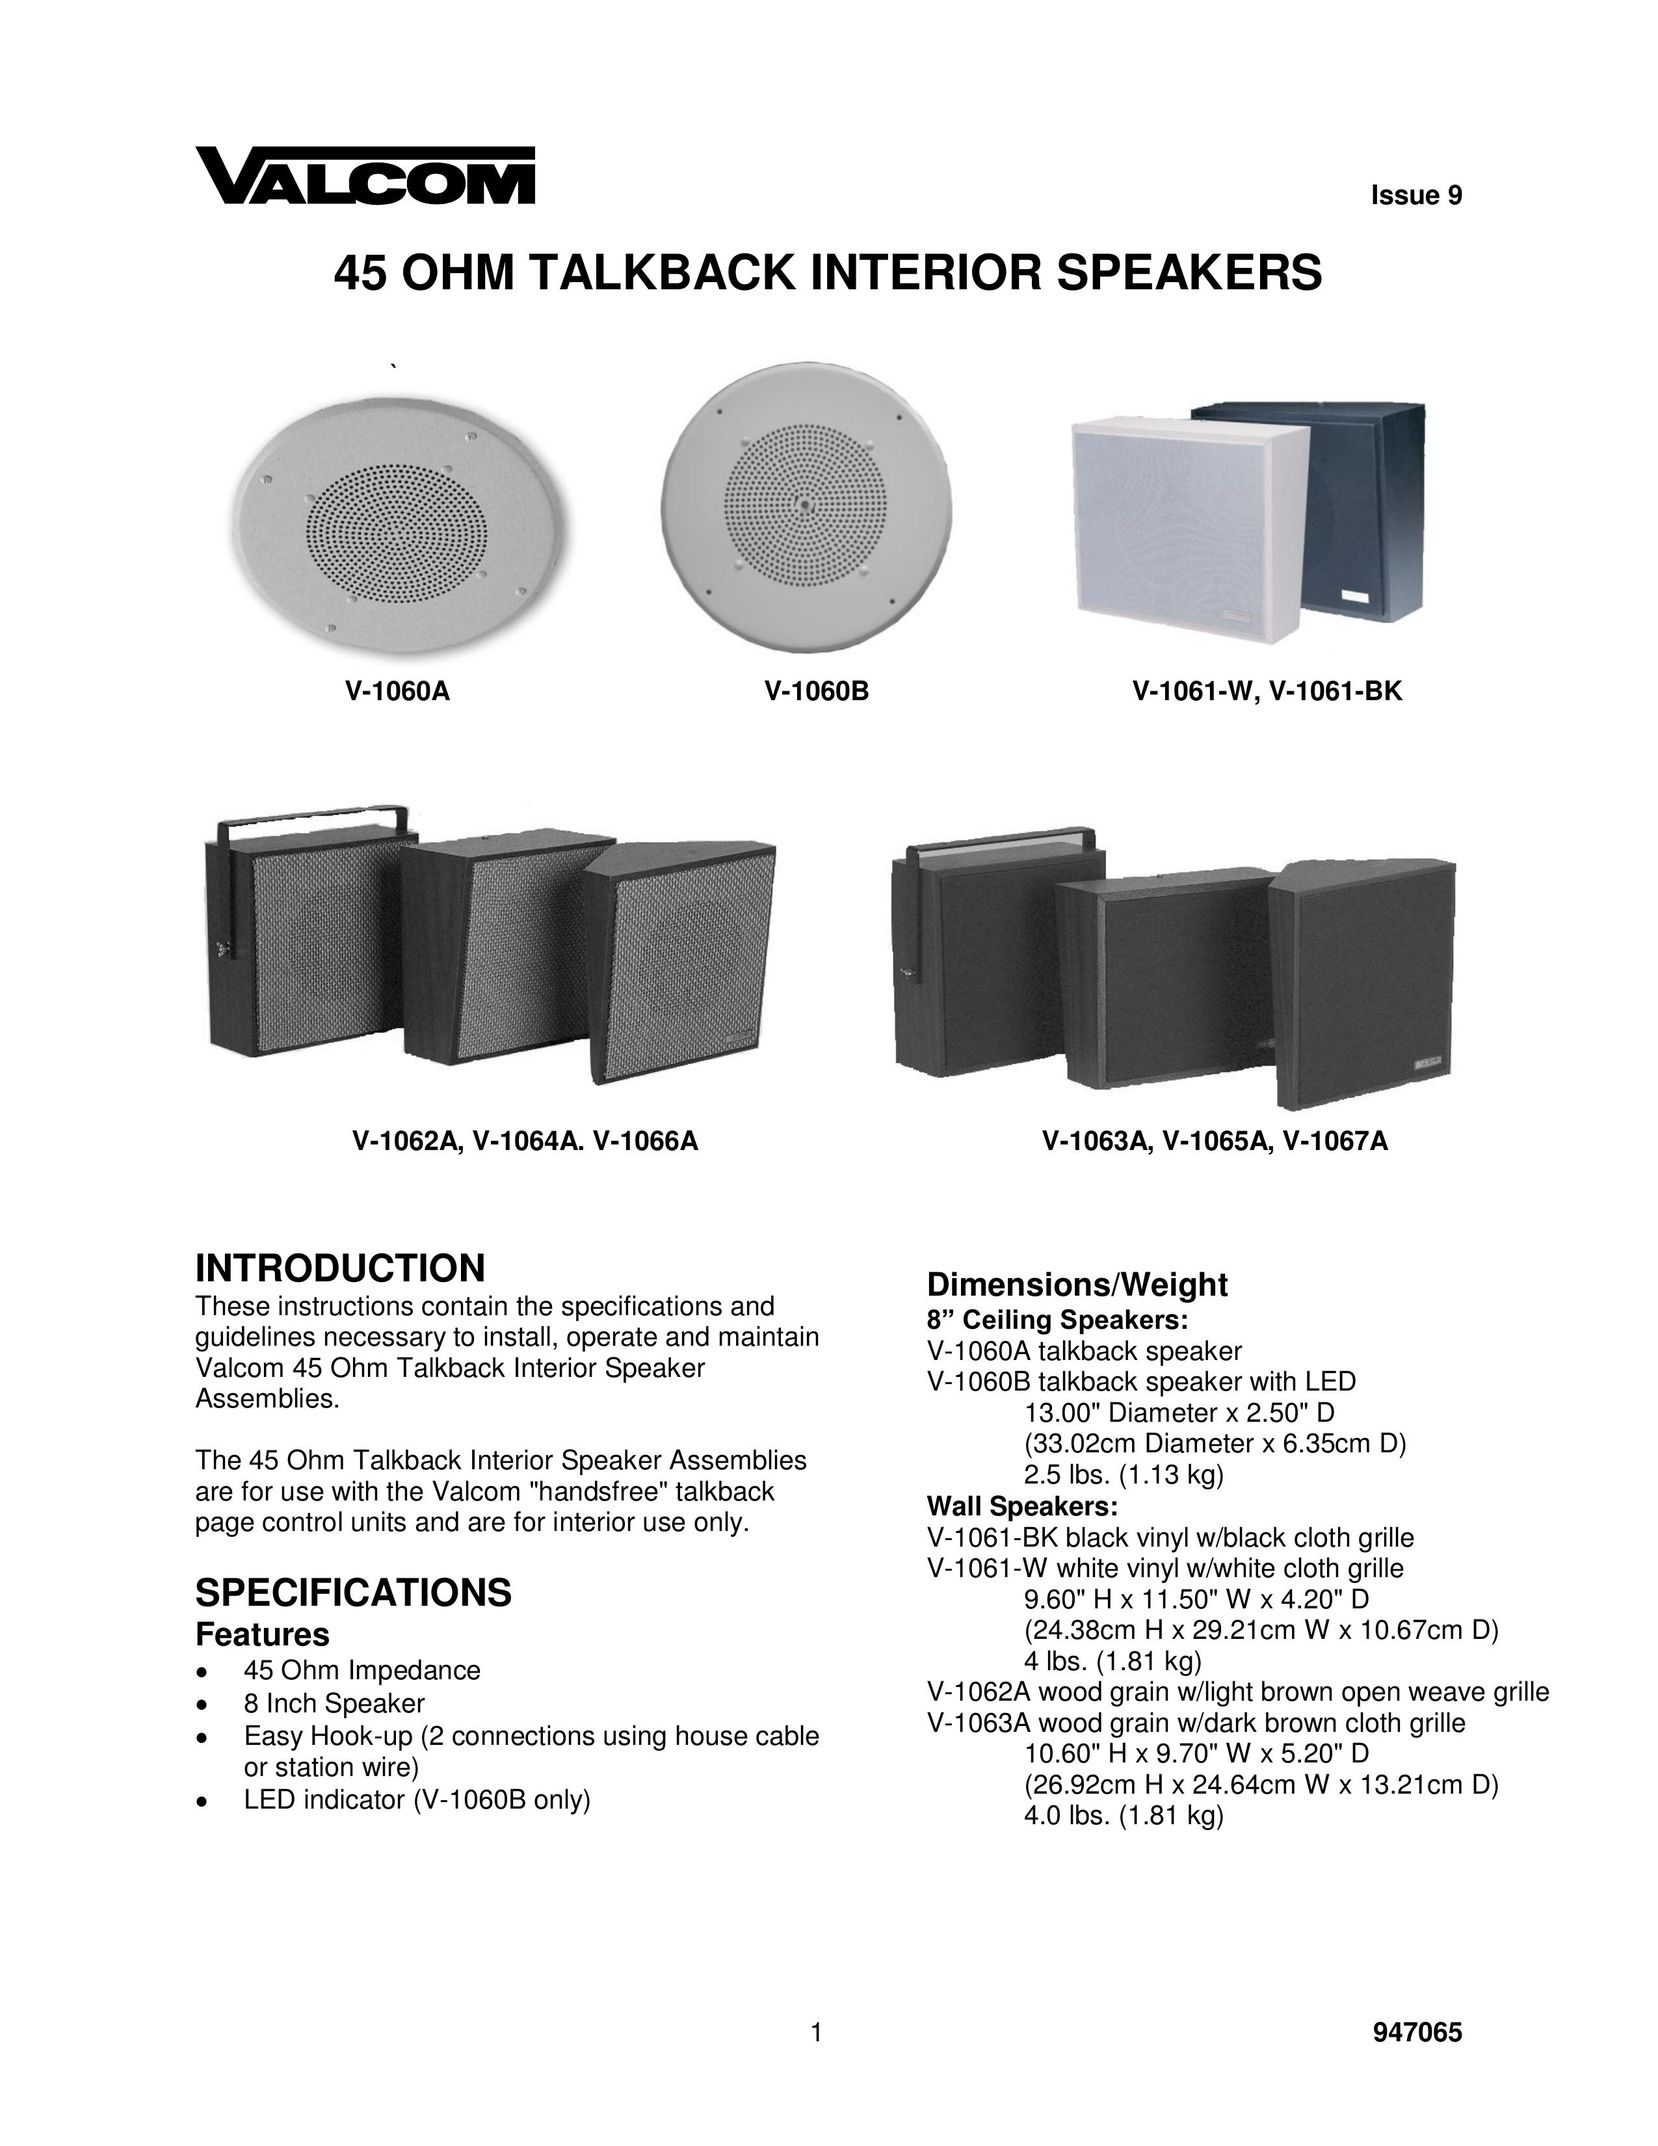 Valcom V-1064A Speaker User Manual